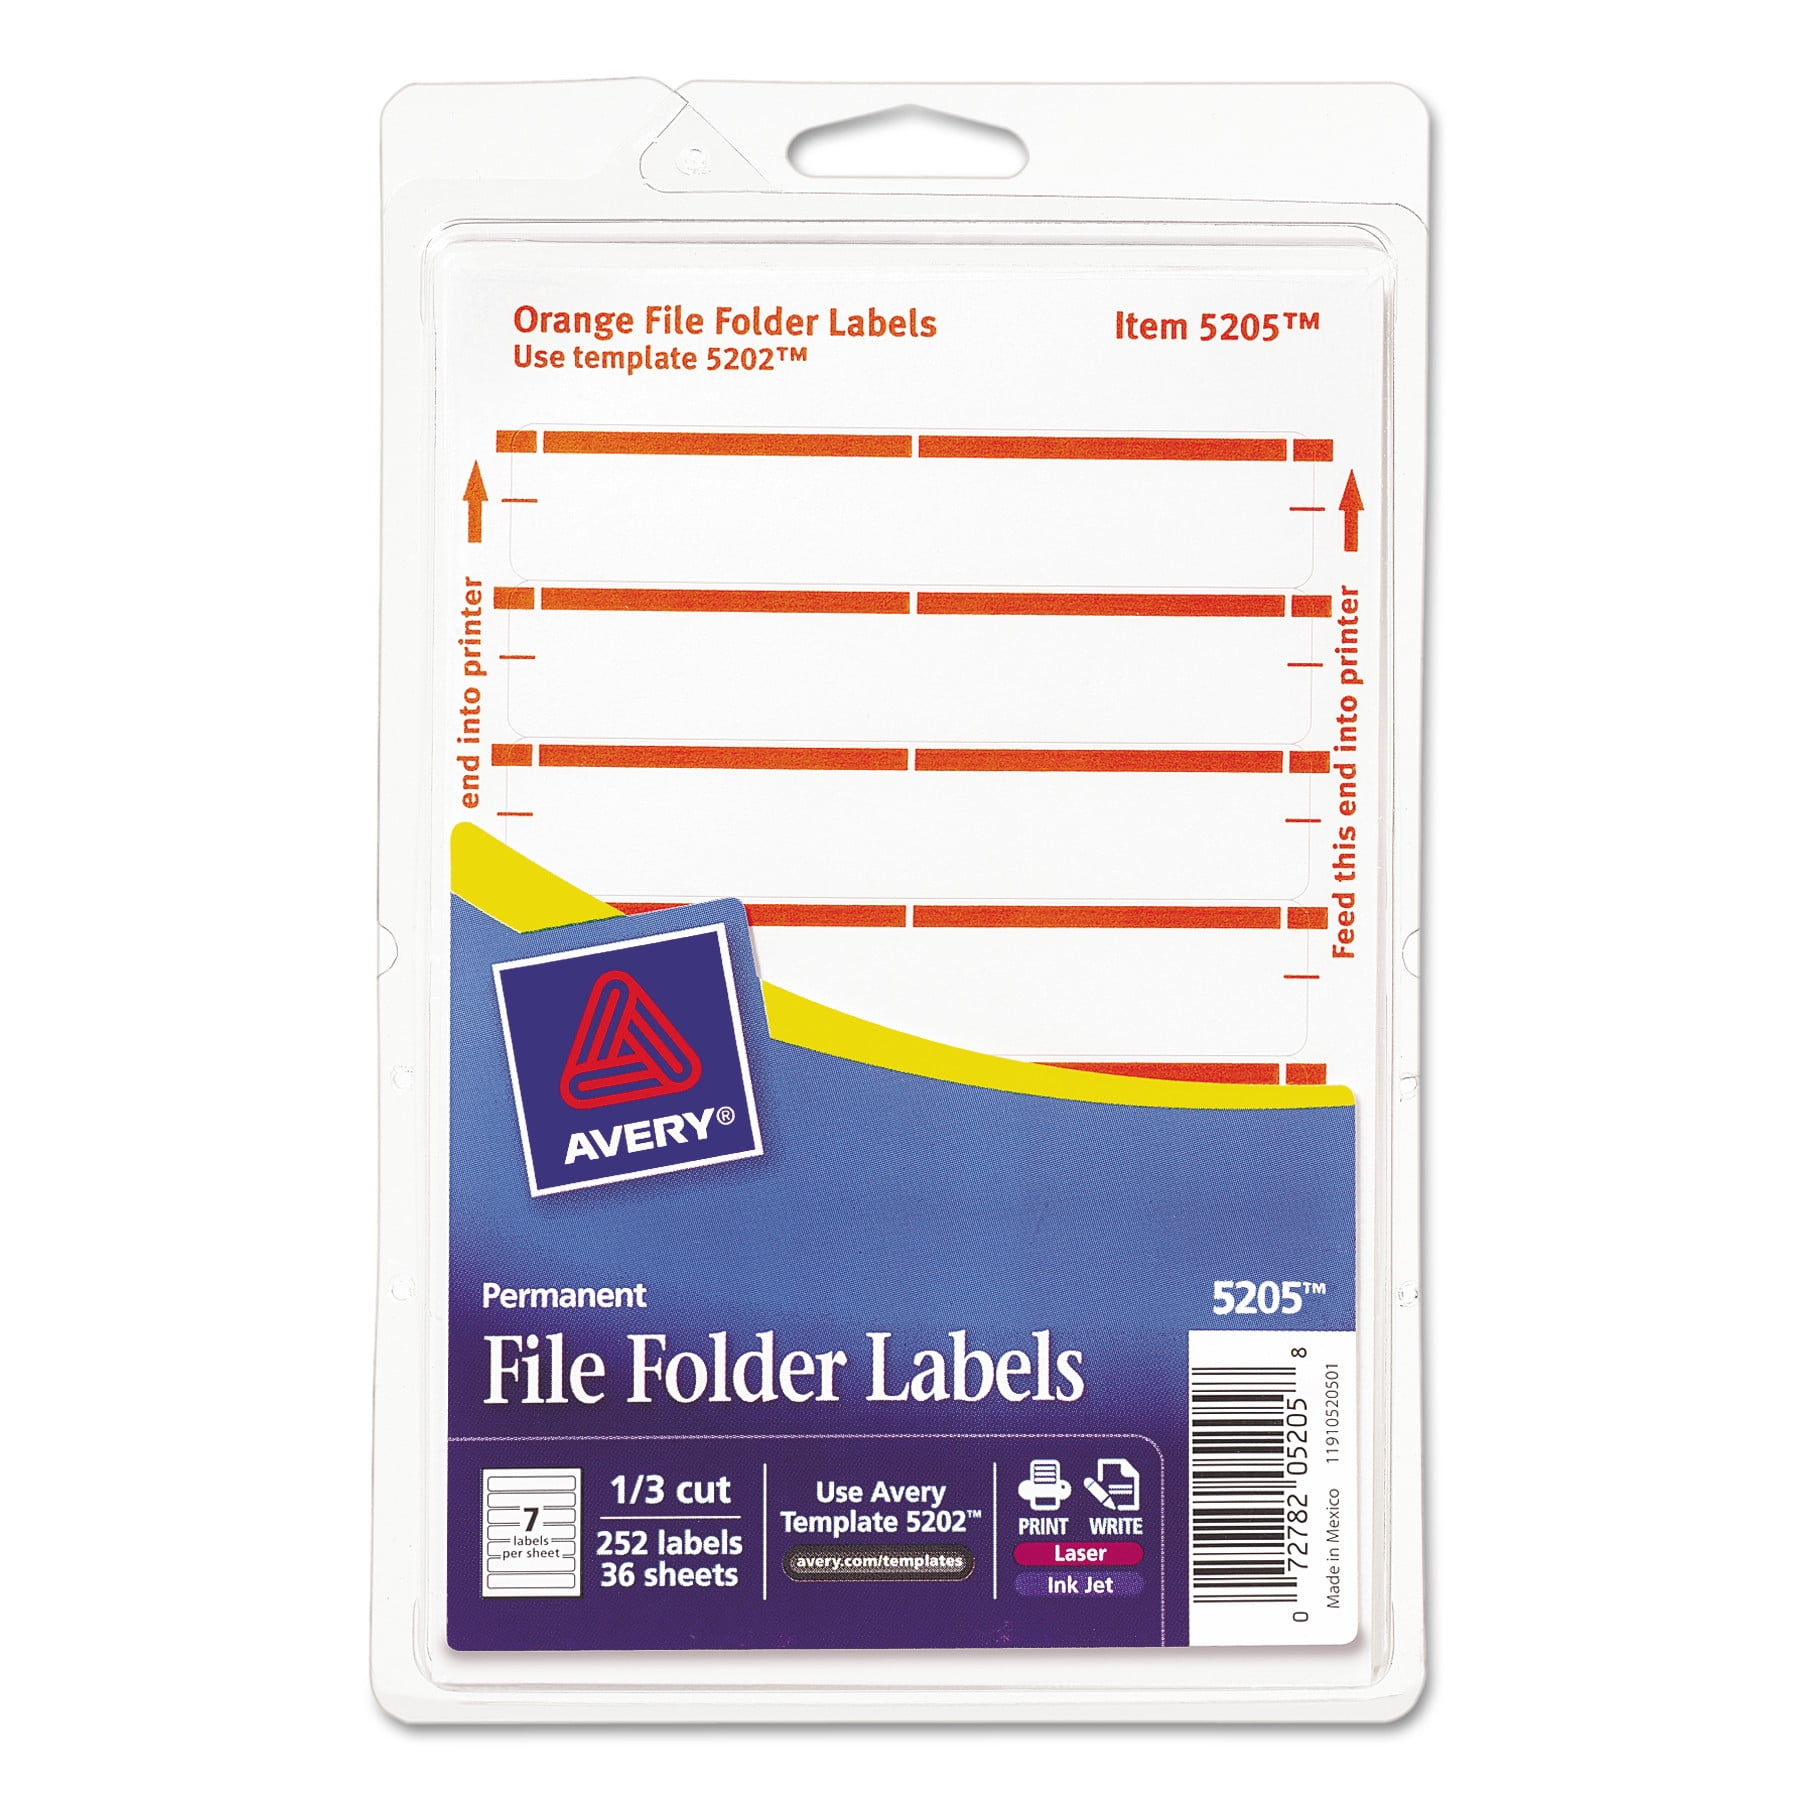 Этикетка для папки регистратора. File folder Labels. Word этикетки